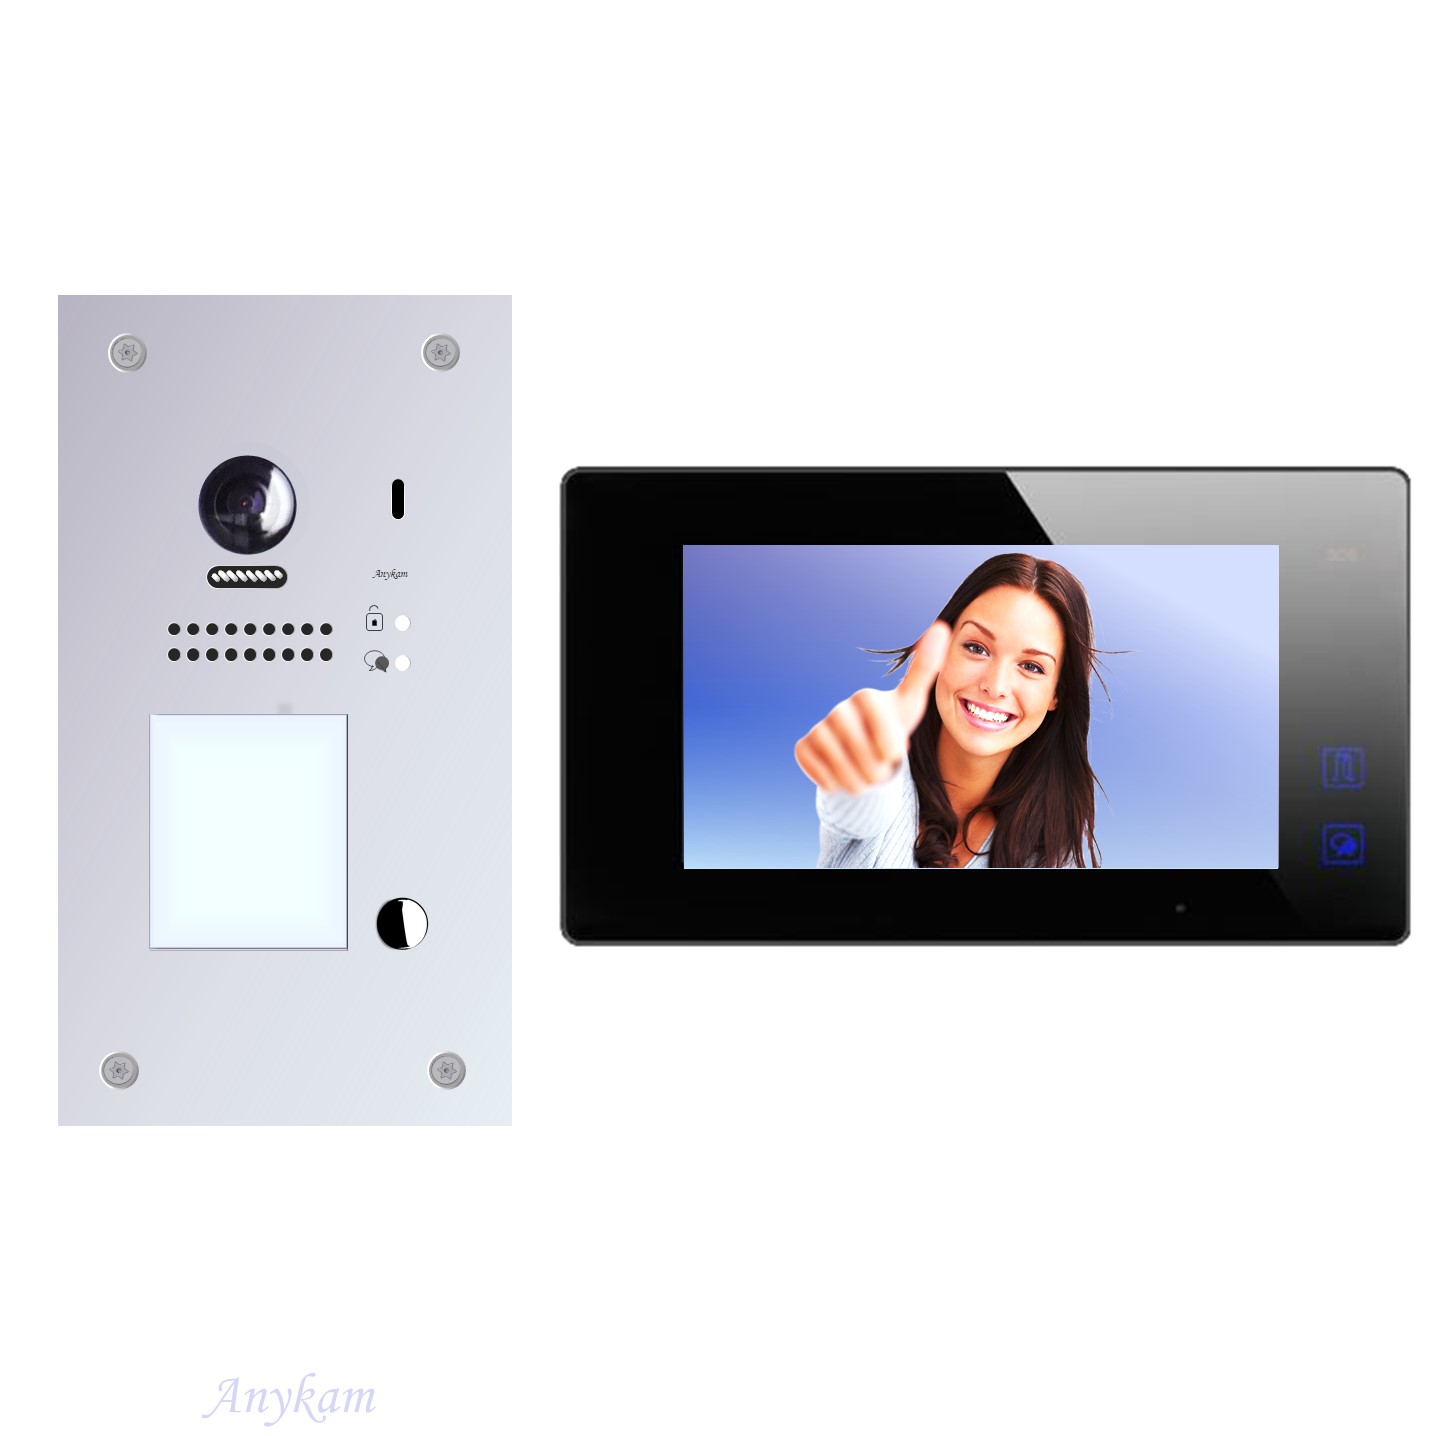 Anykam Design Farb Video Türsprechanlage, Videosprechanlage, Video Gegensprechanlage, Klingelanalge mit Kamera, Interfon mit 2-Draht Technologie